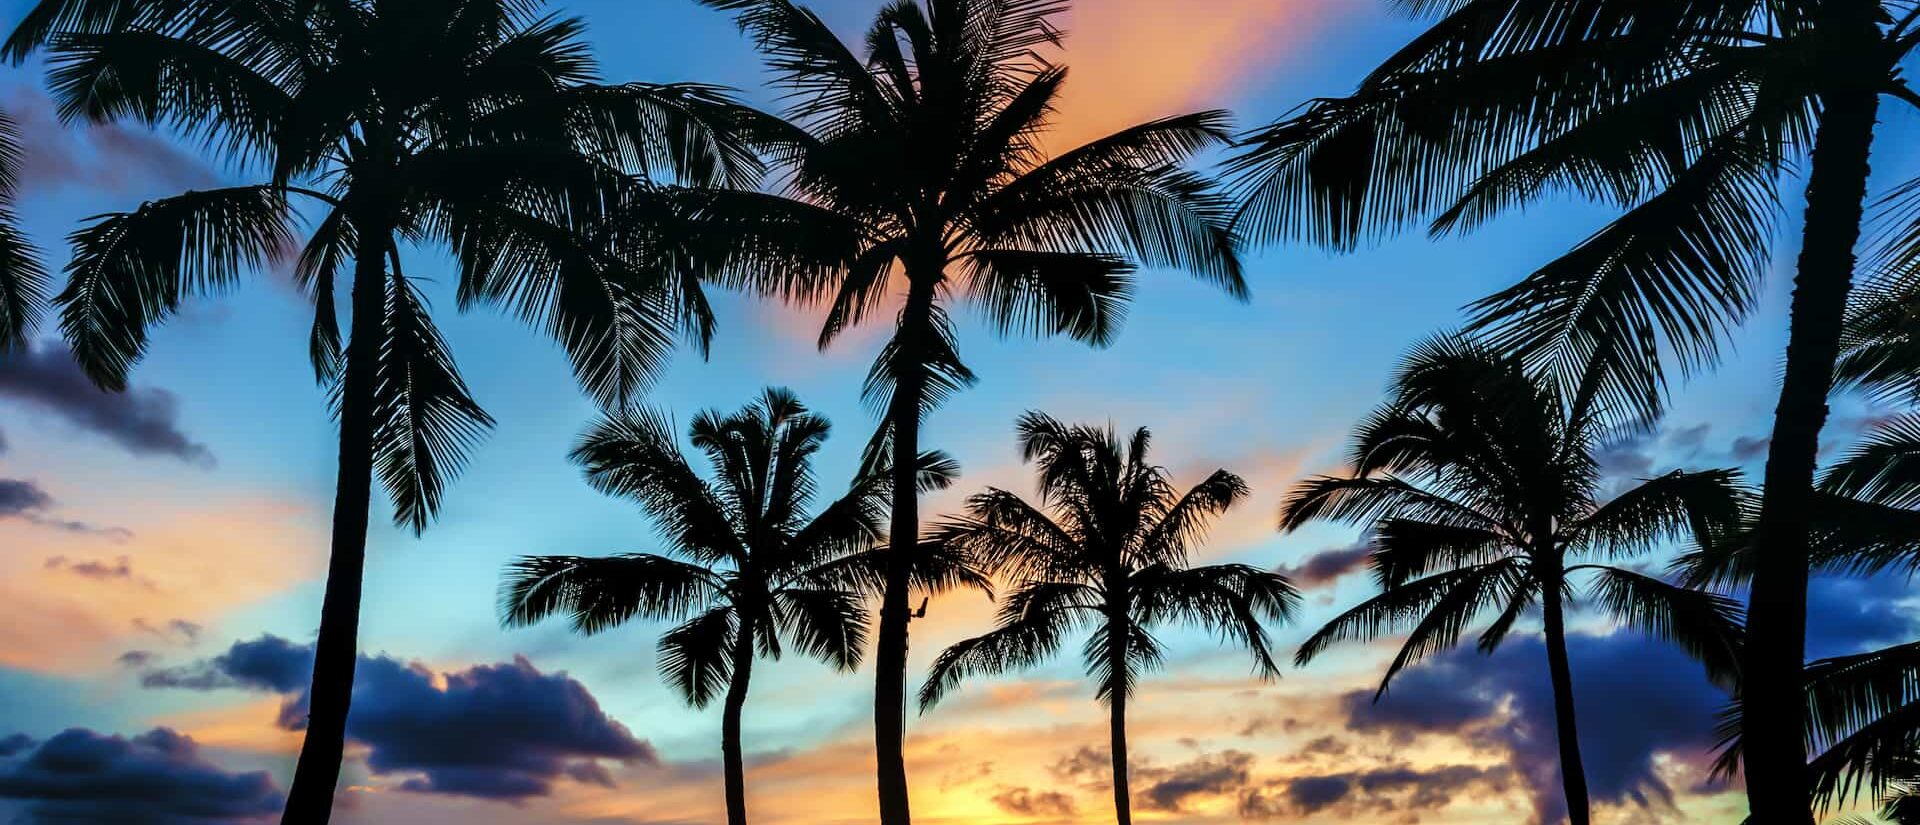 vue en contre bas d'un coucher de soleil en polynésien avec des couleurs bleu, orange, jaune, rose et des cocotiers en premiers plan